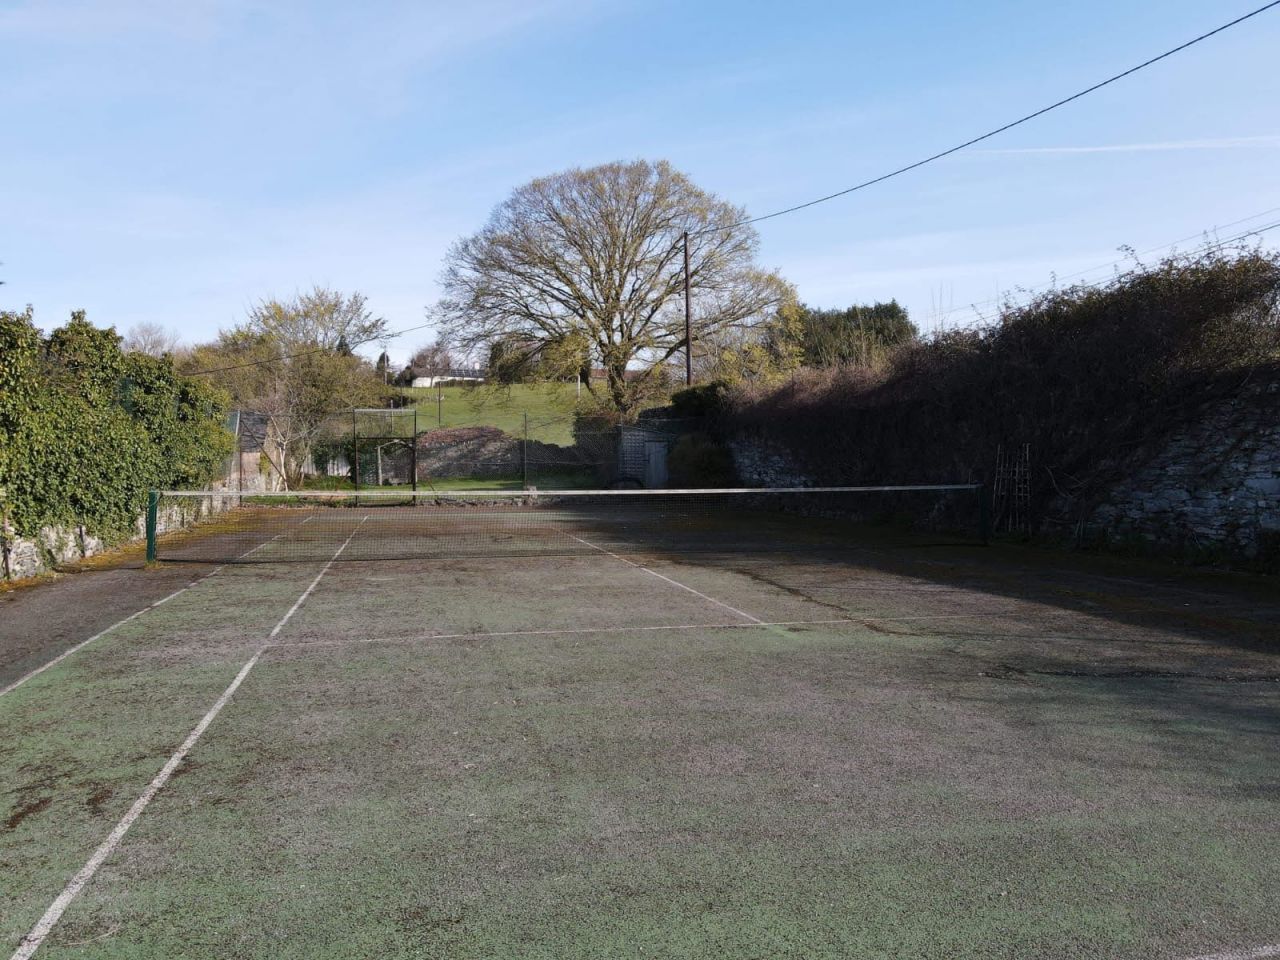 tennis court paint